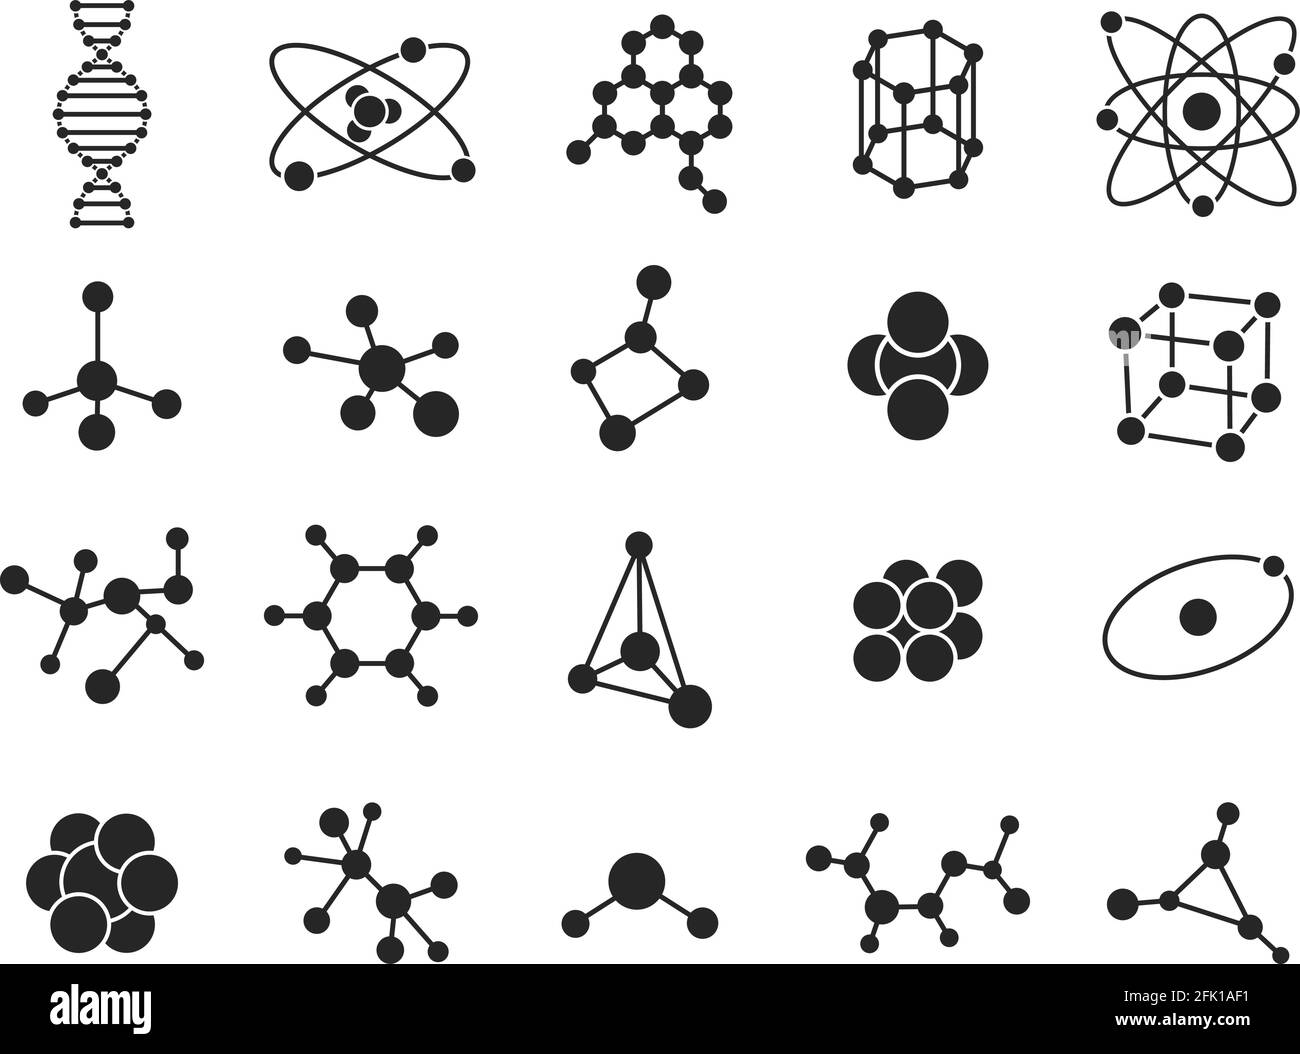 Molekulare Struktur. Wissenschaftsmoleküle, Atom. Symbol für chemische Verbindungen. DNA-Struktur oder Hormonpartikel. Isolierte biotechnologische Vektorsymbole Stock Vektor